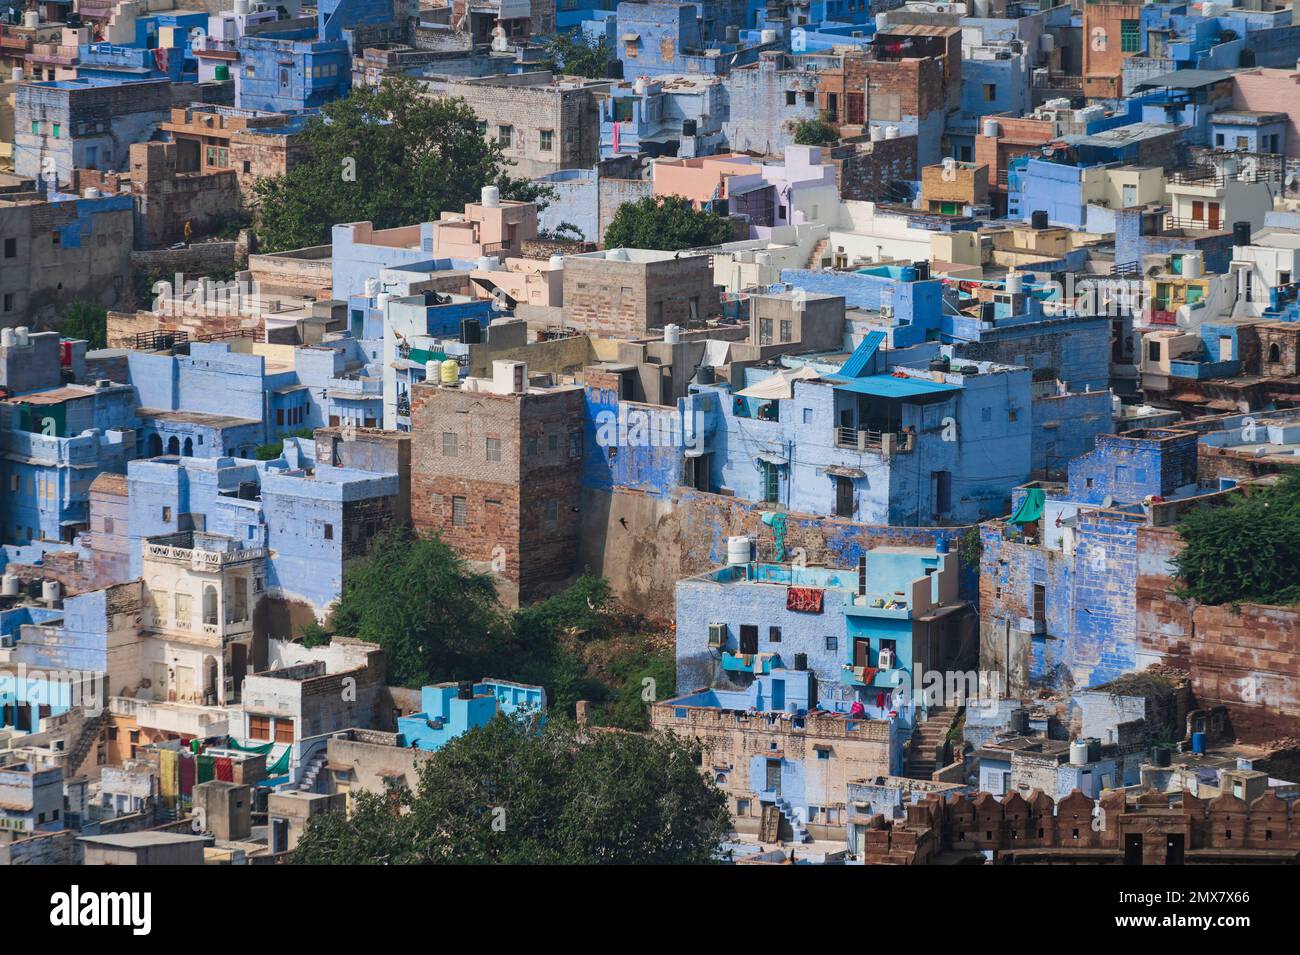 Luftaufnahme der blauen Stadt, Jodhpur, Rajasthan, Indien. Die Brahmanen verehren Lord Shiva und malten ihre Häuser in Blau, wie blau seine Lieblingsfarbe ist. Stockfoto